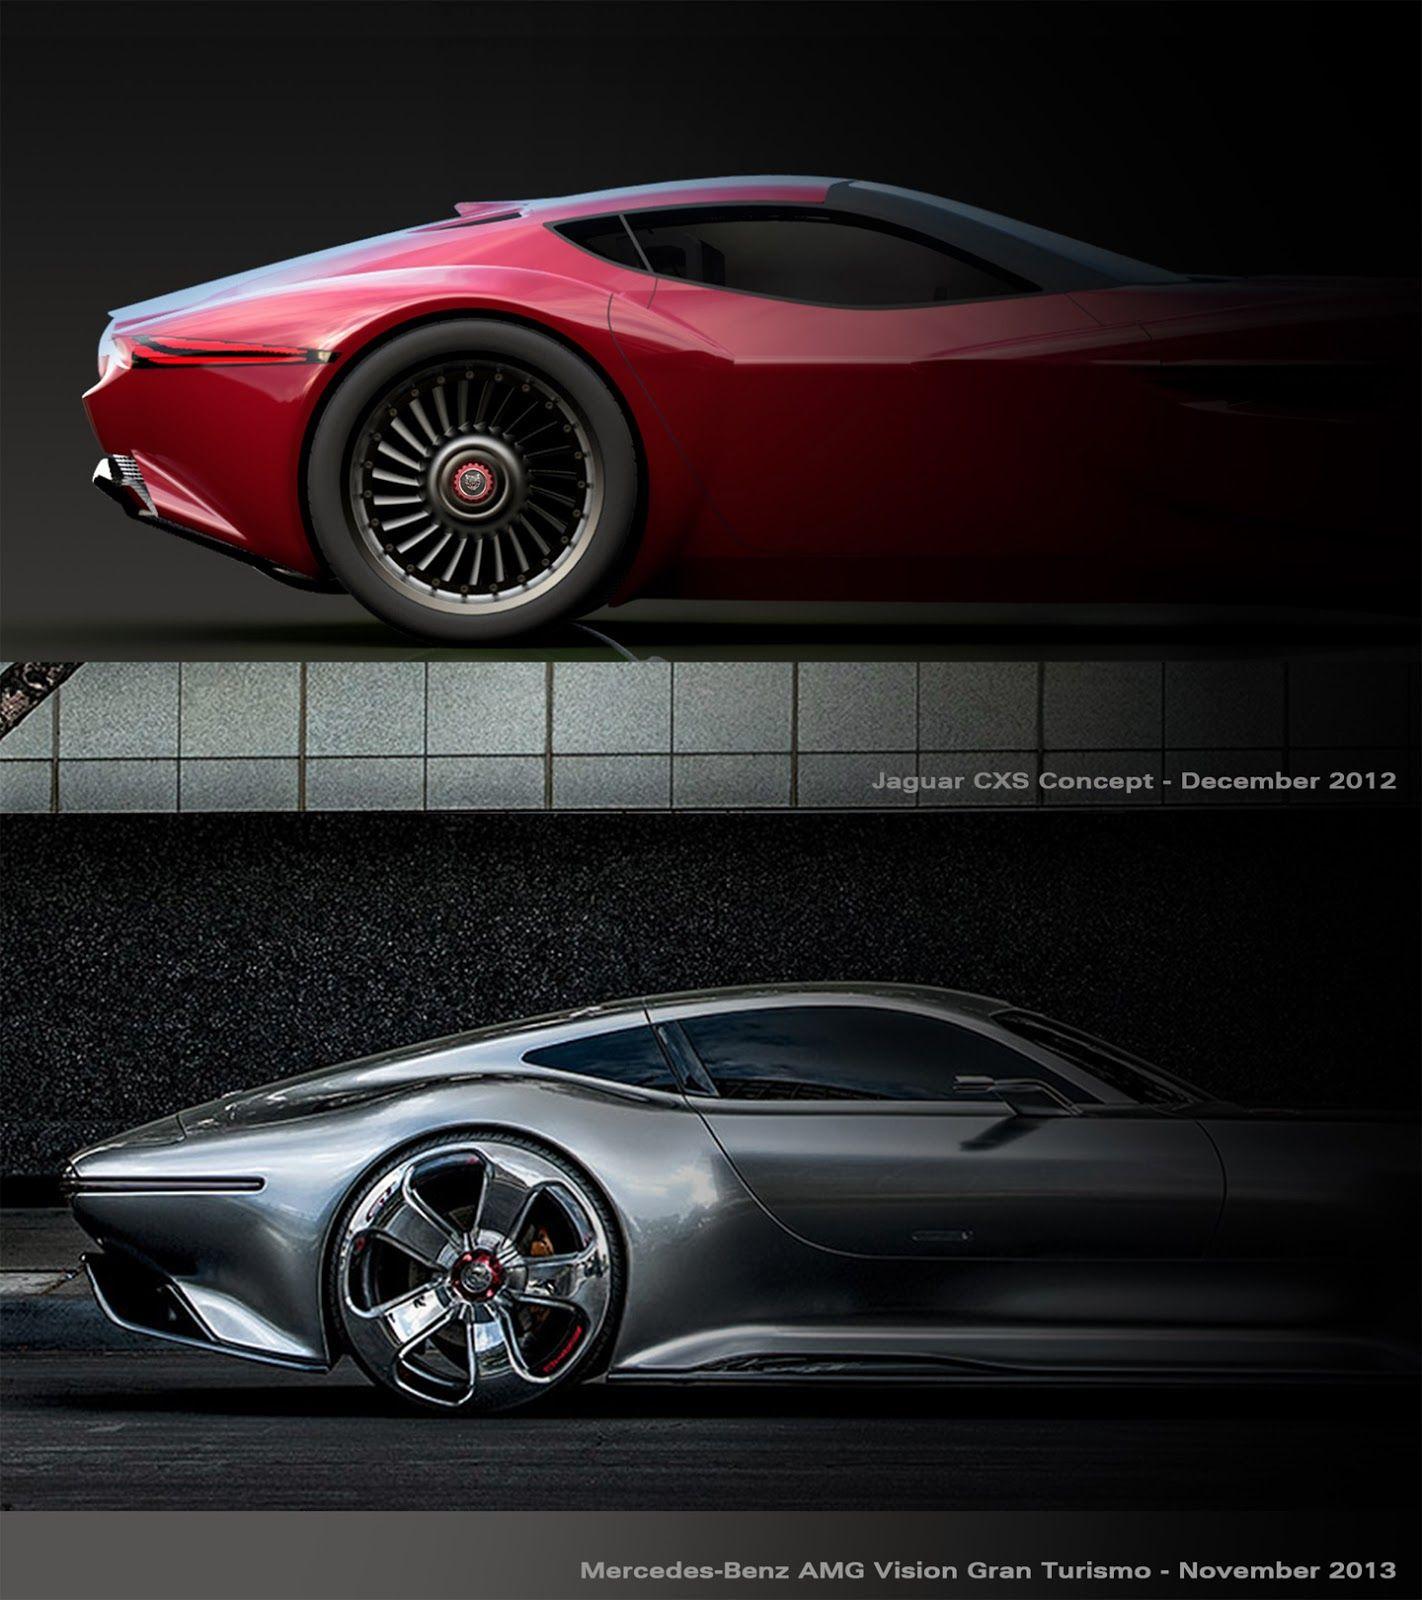 Jaguar CXS Concept Vs Mercedes Benz AMG Vision Gran Turismo